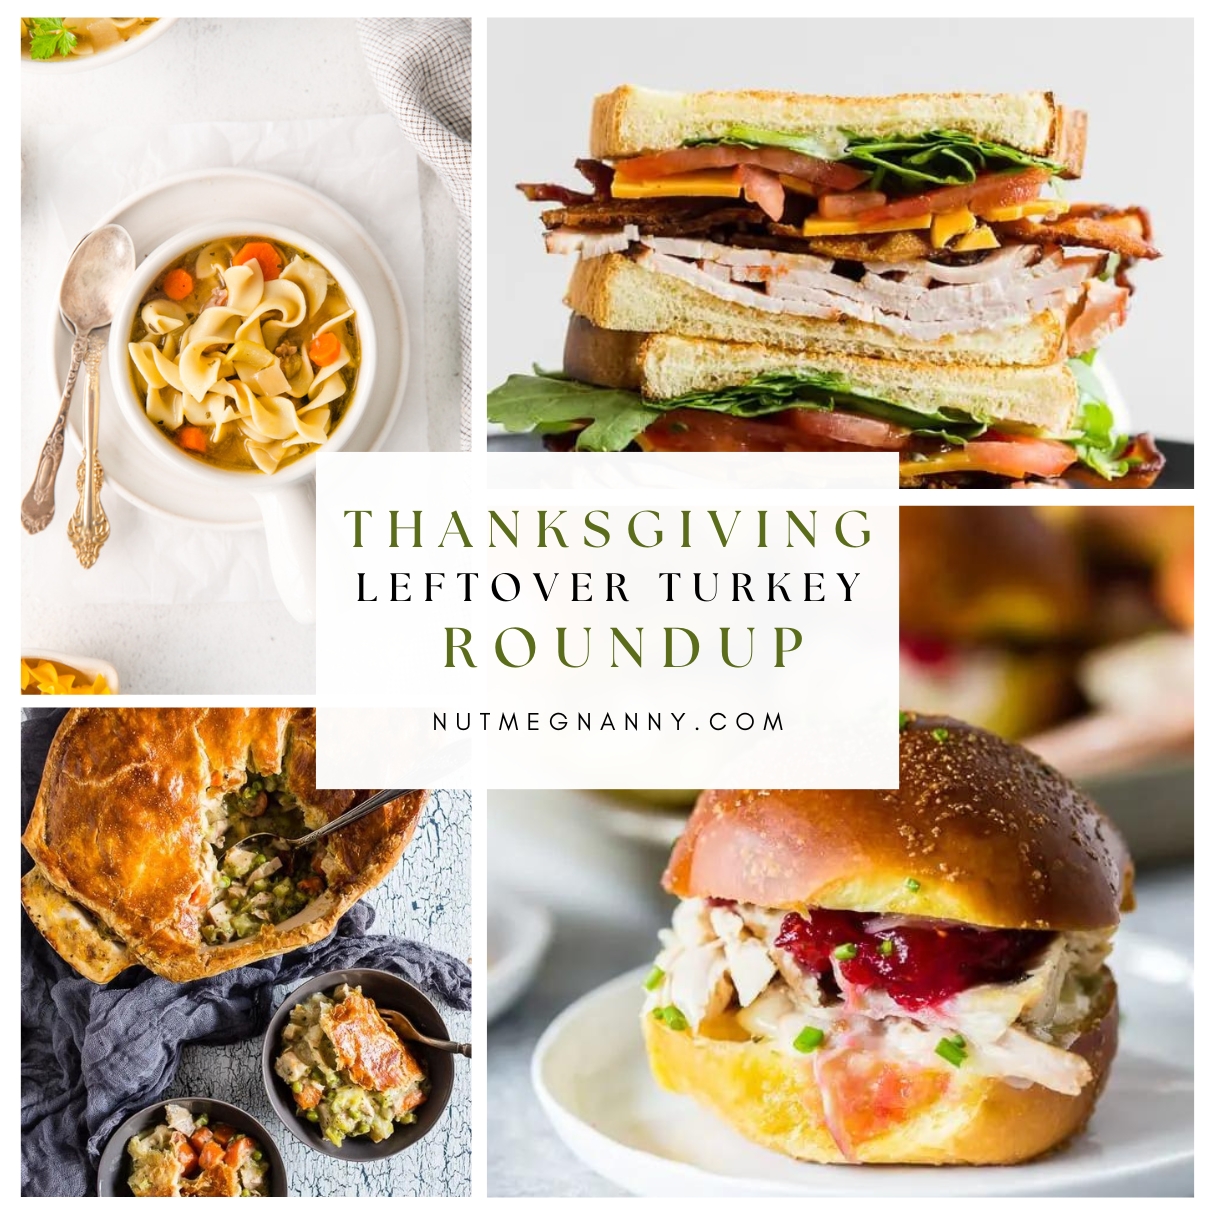 Leftover Turkey Roundup pin for Pinterest. 